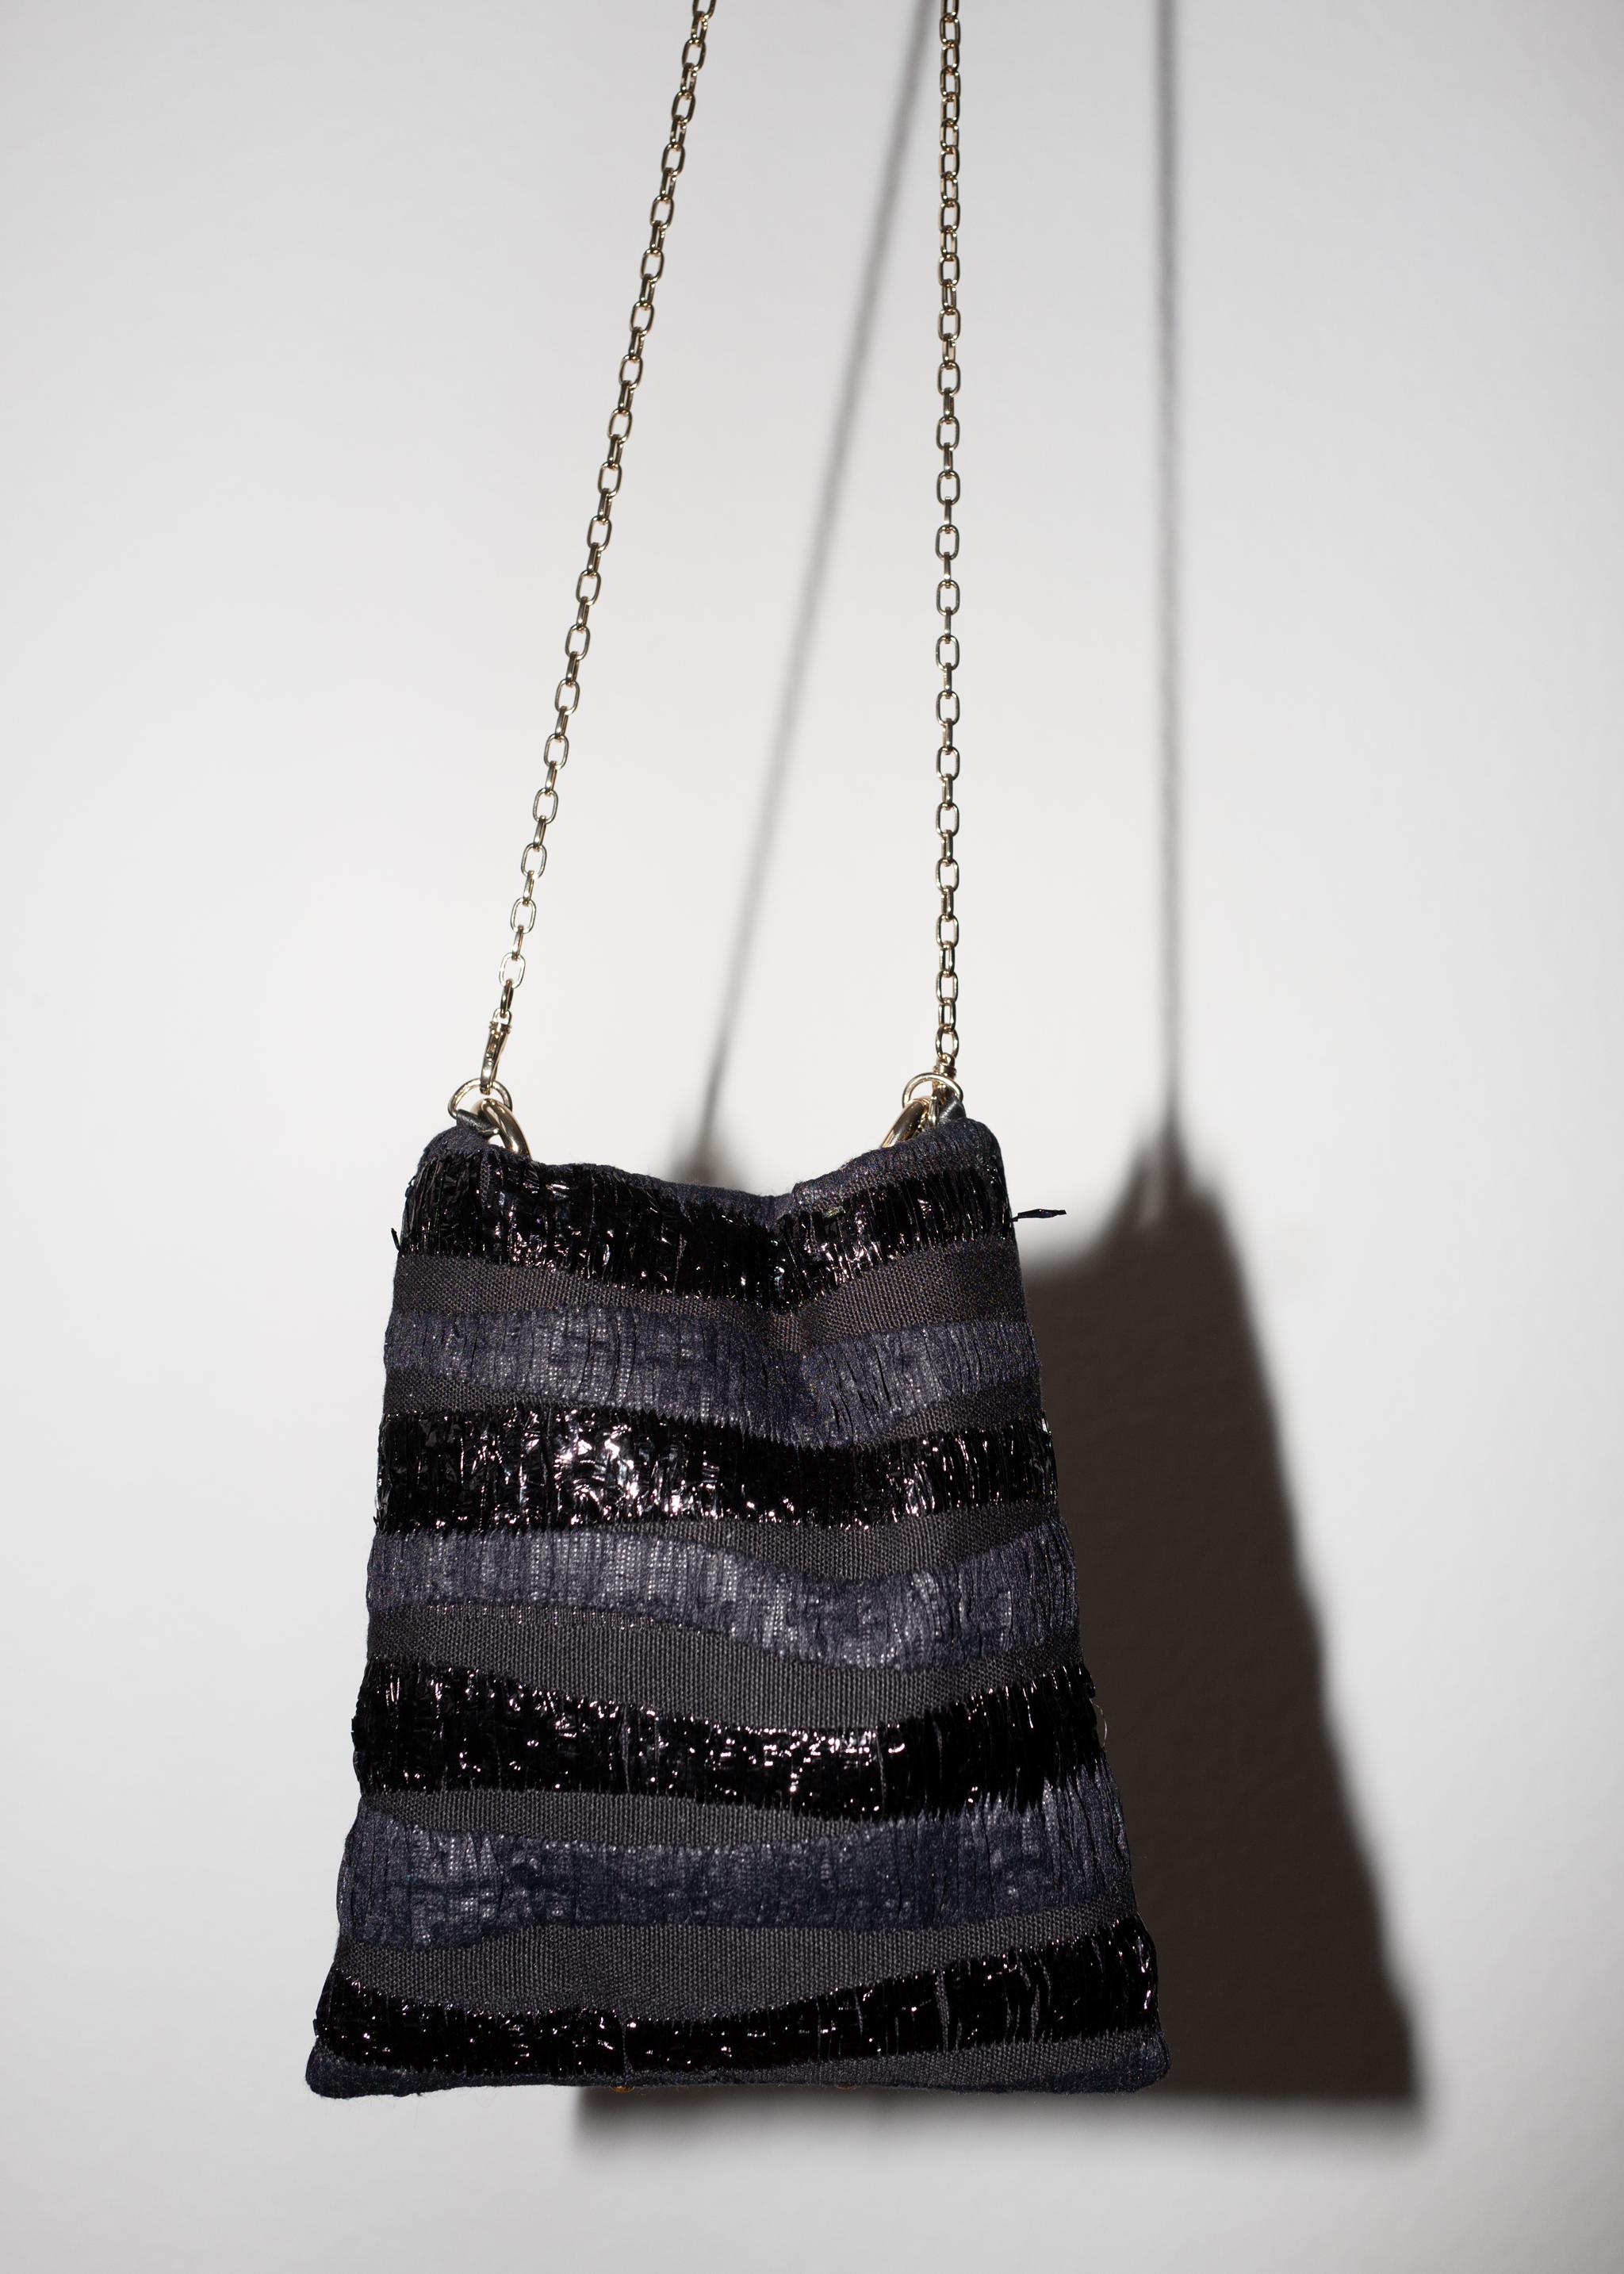 Crystal Swarovski Embellishment Black French Tweed Gold Chain Shoulder Bag 1